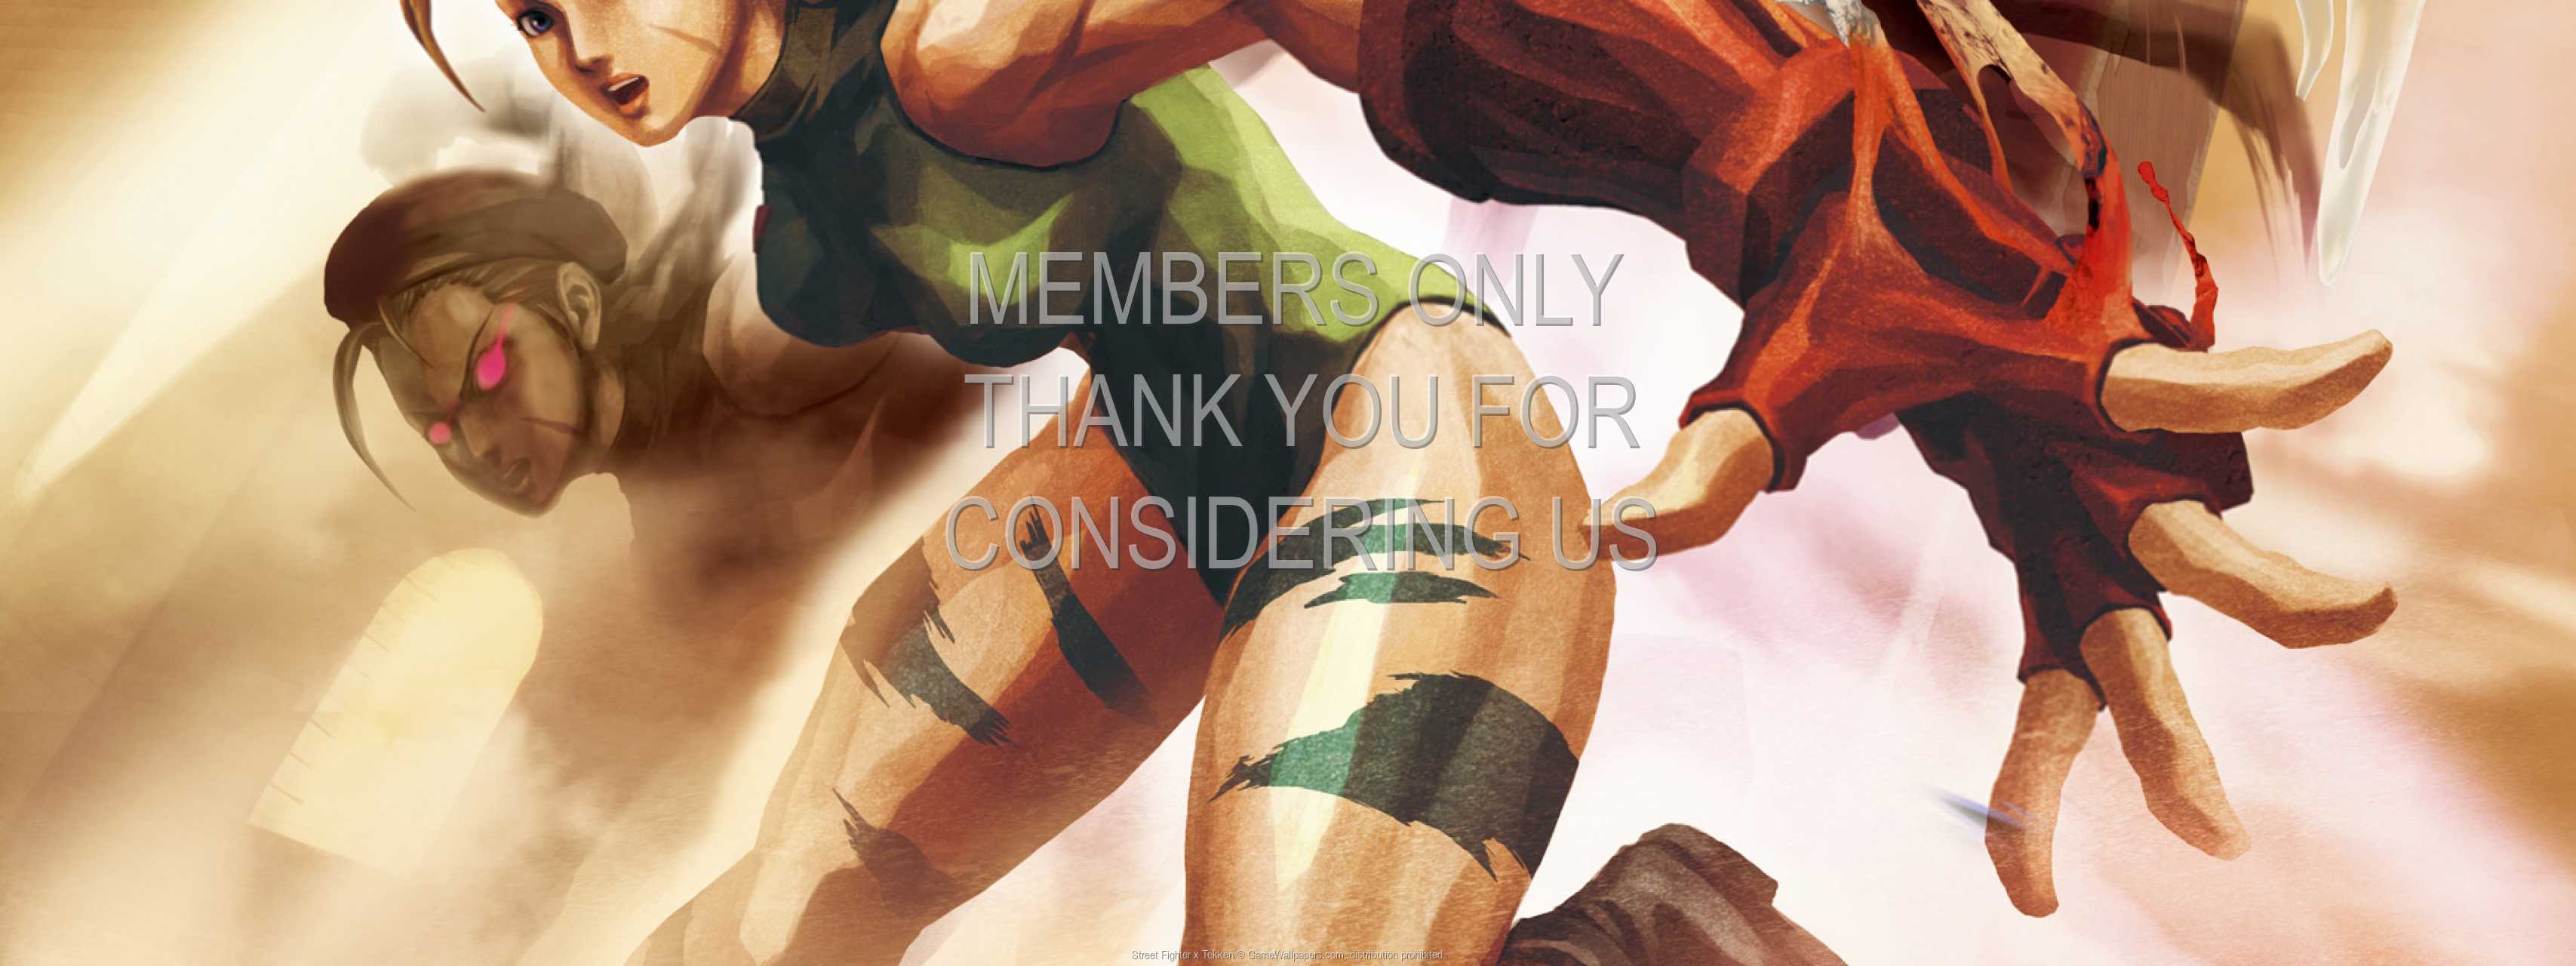 Street Fighter x Tekken 720p%20Horizontal Mobile wallpaper or background 01